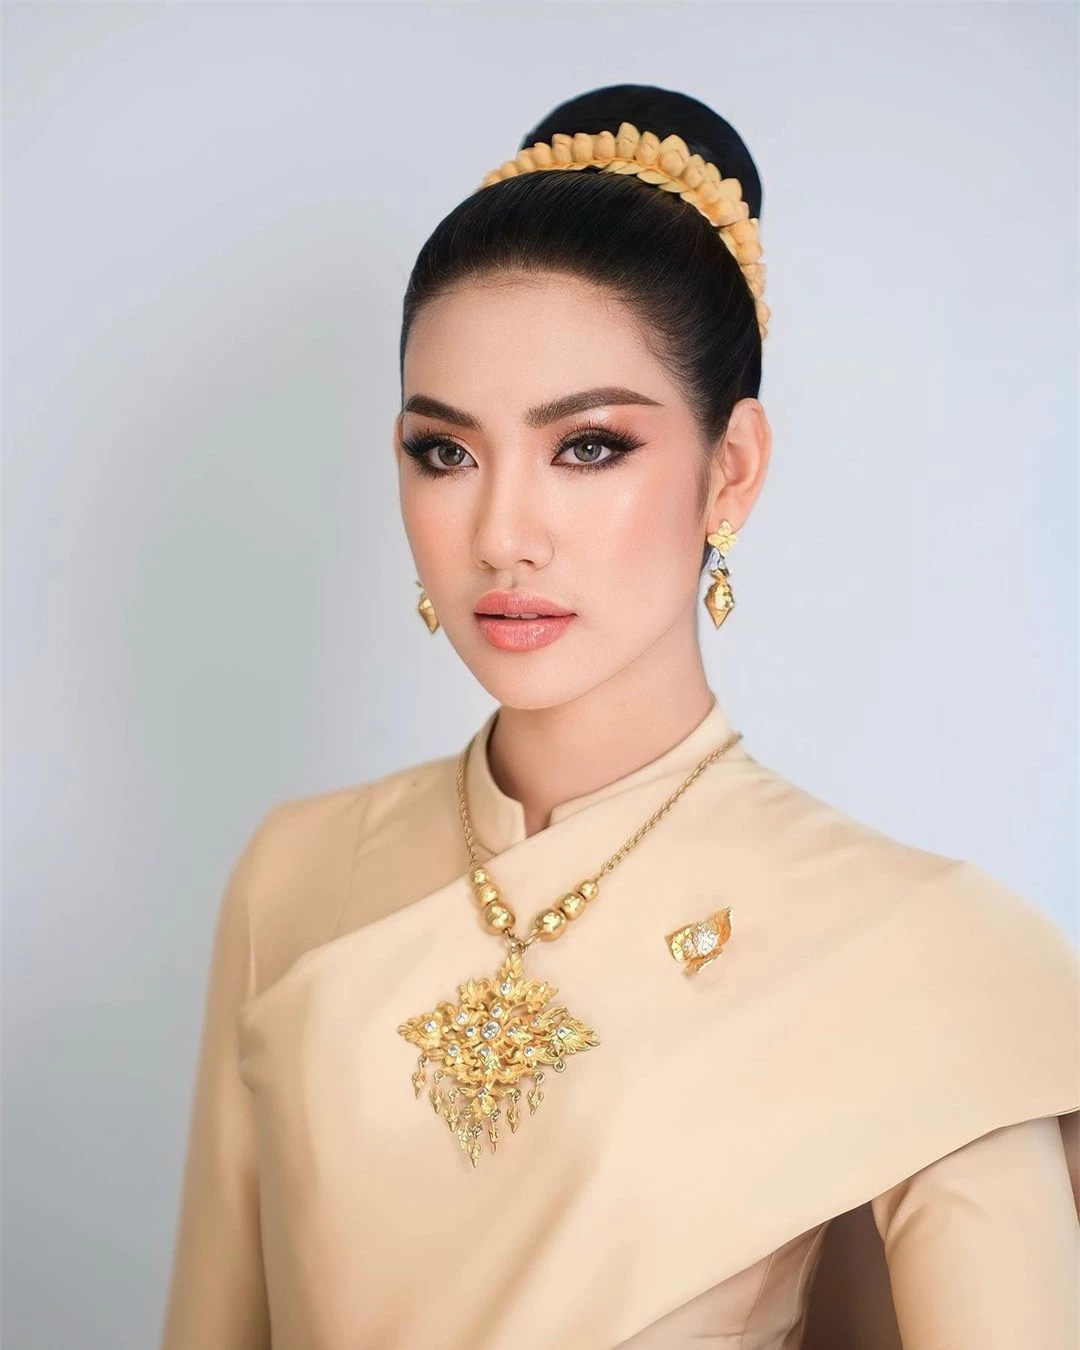 Tân Hoa hậu Hoàn vũ Campuchia được khen ngợi ảnh 15